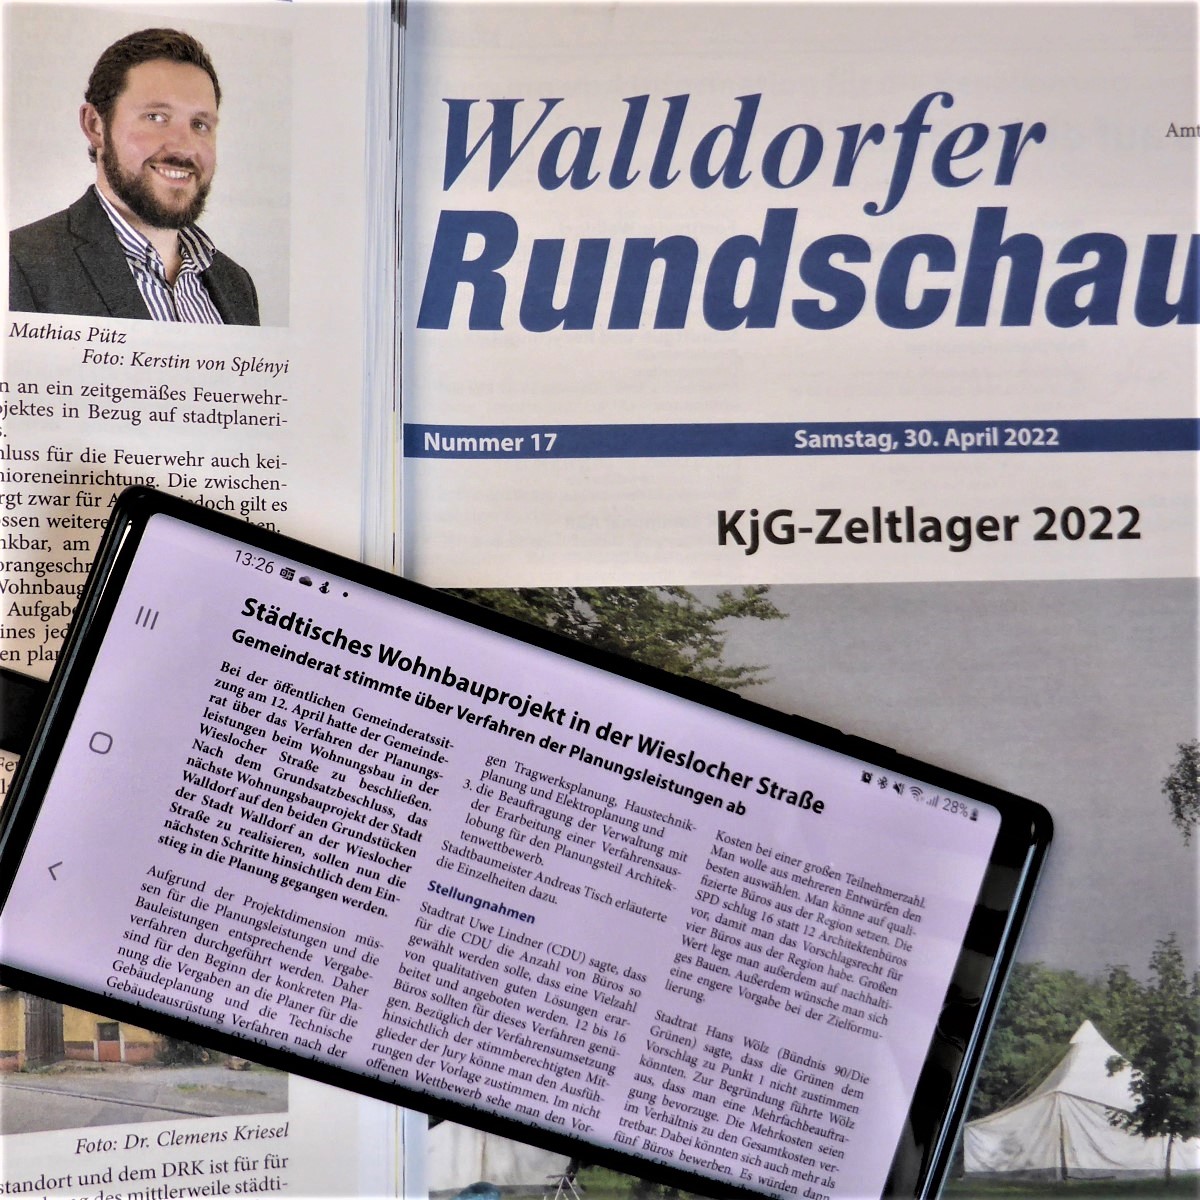 Die Walldorfer Rundschau 2022 Nr. 17 in Papierform und auf dem Smartphone | Foto: Dr. Clemens Kriesel